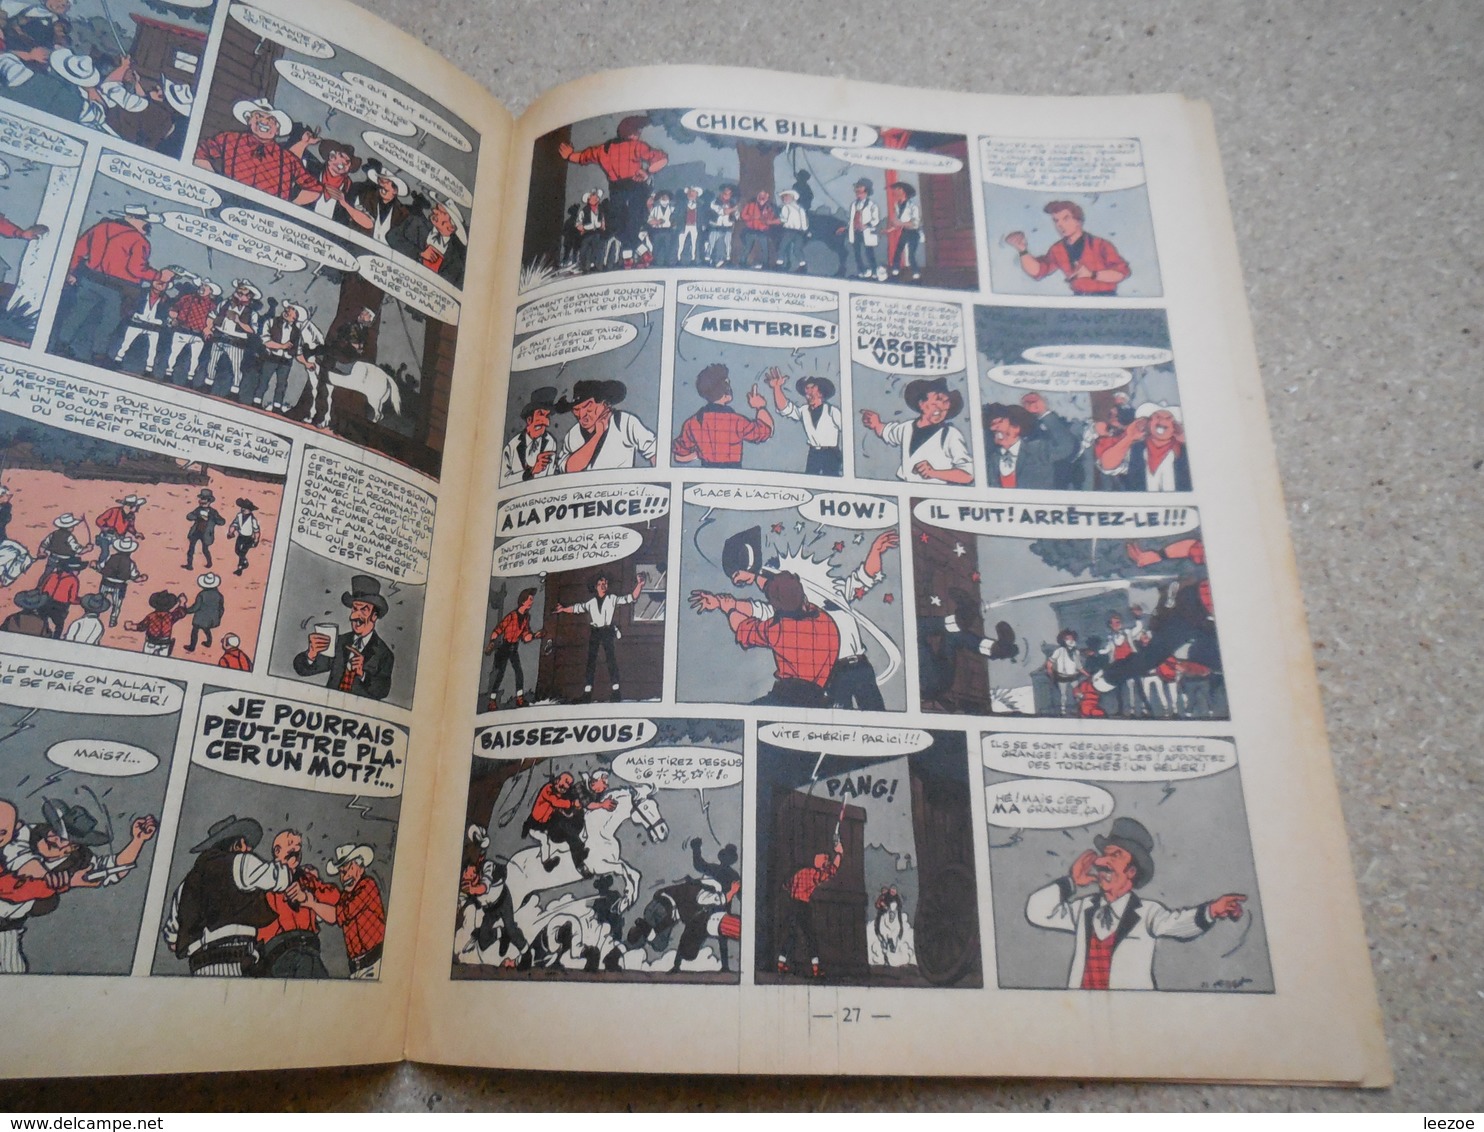 EO de la collection juniorChick Bill Shérif à vendre, de Greg et Tibet  chez dargaud, 1960..3B0420